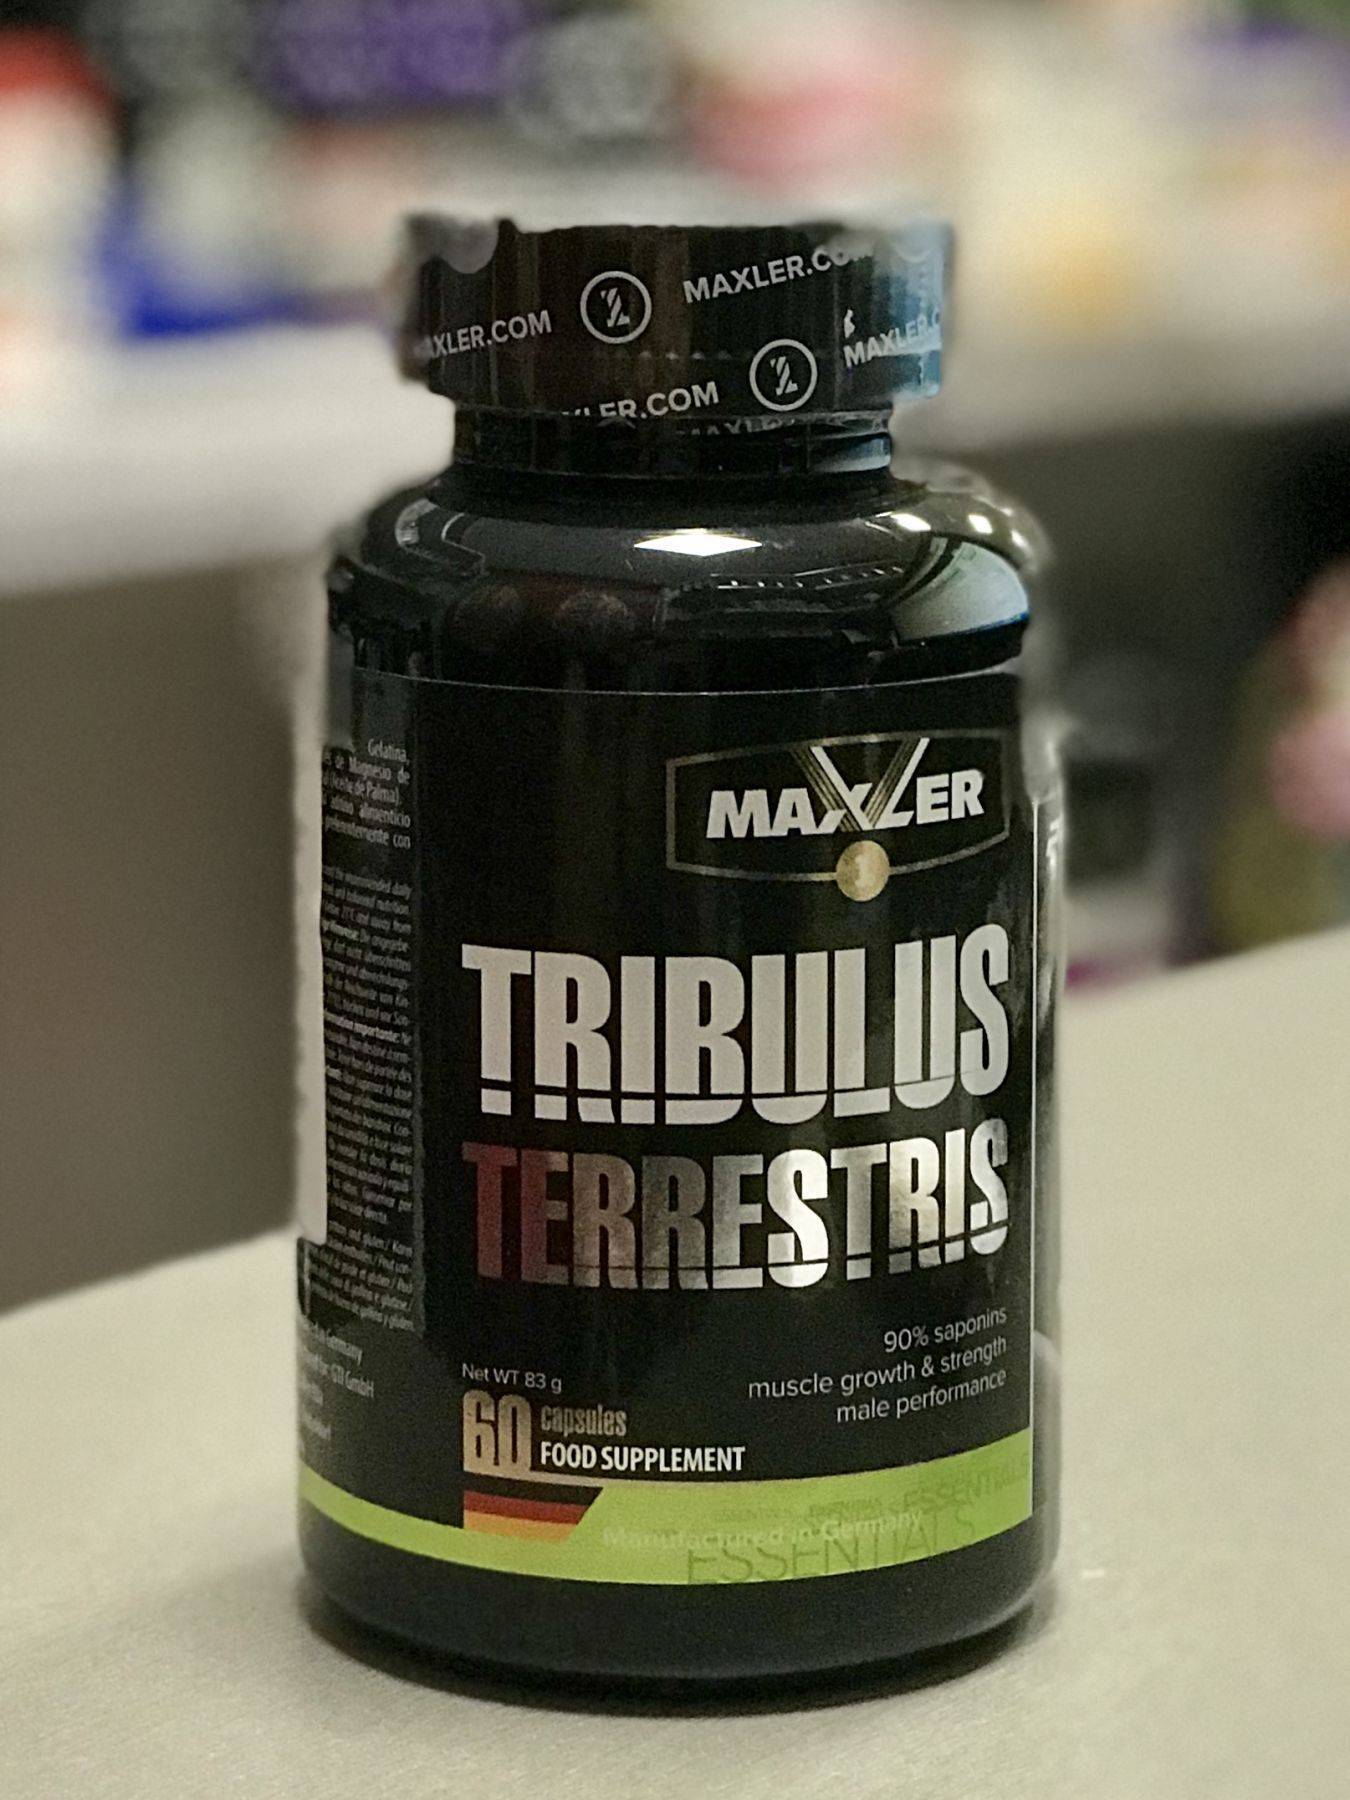 Трибулус террестрис (tribulus terrestris) – отзывы, свойства, побочные эффекты